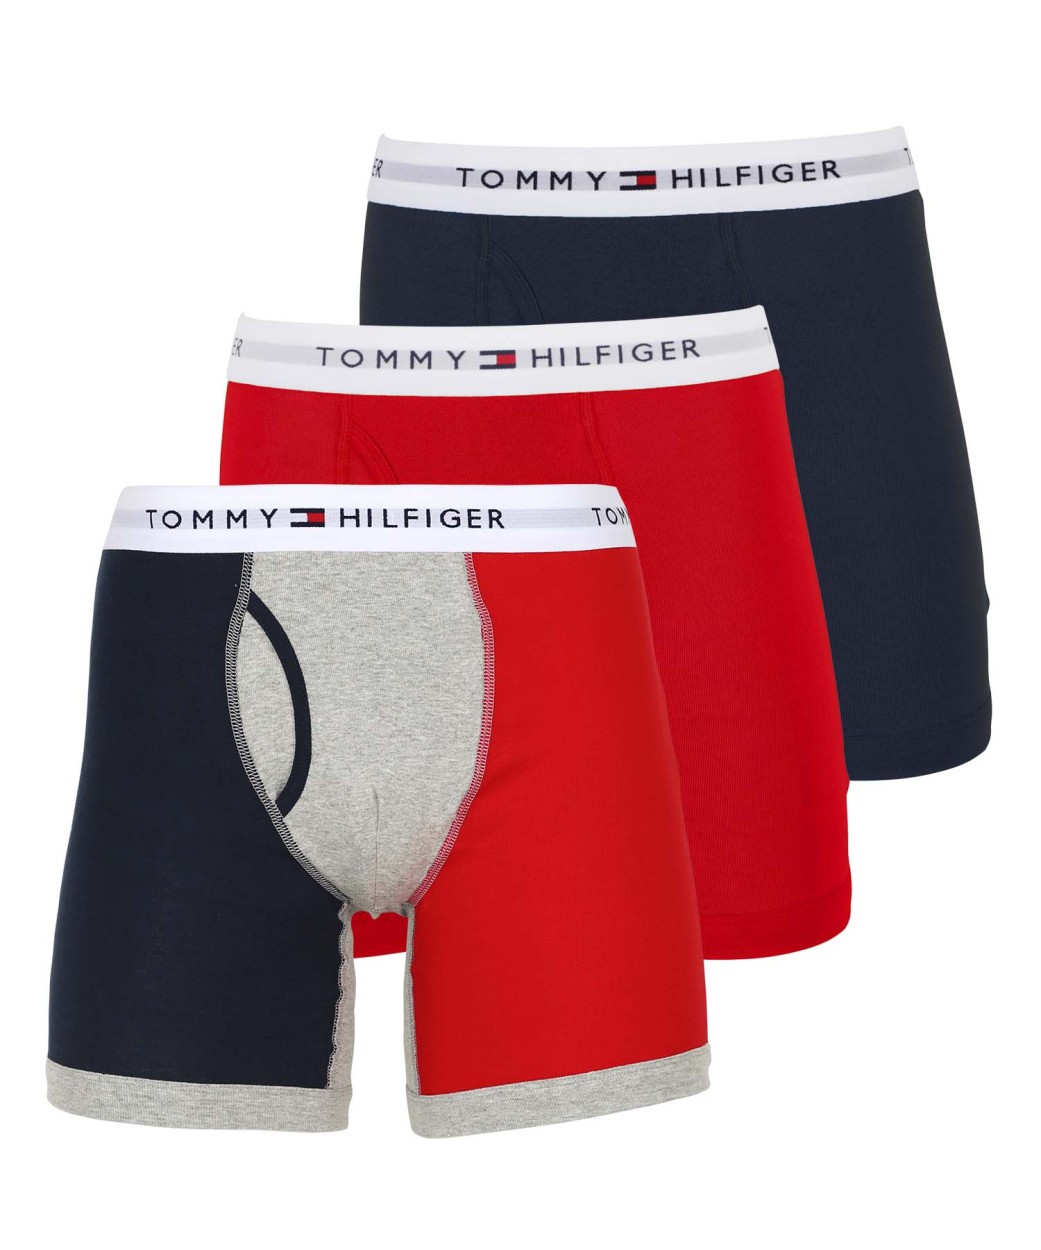 ワケあり トミー ヒルフィガー TOMMY HILFIGER ロングボクサーパンツ 3枚セット メンズ コットン100% 綿 アウトレット 前開き  ブランド ロゴ ギフト メール便